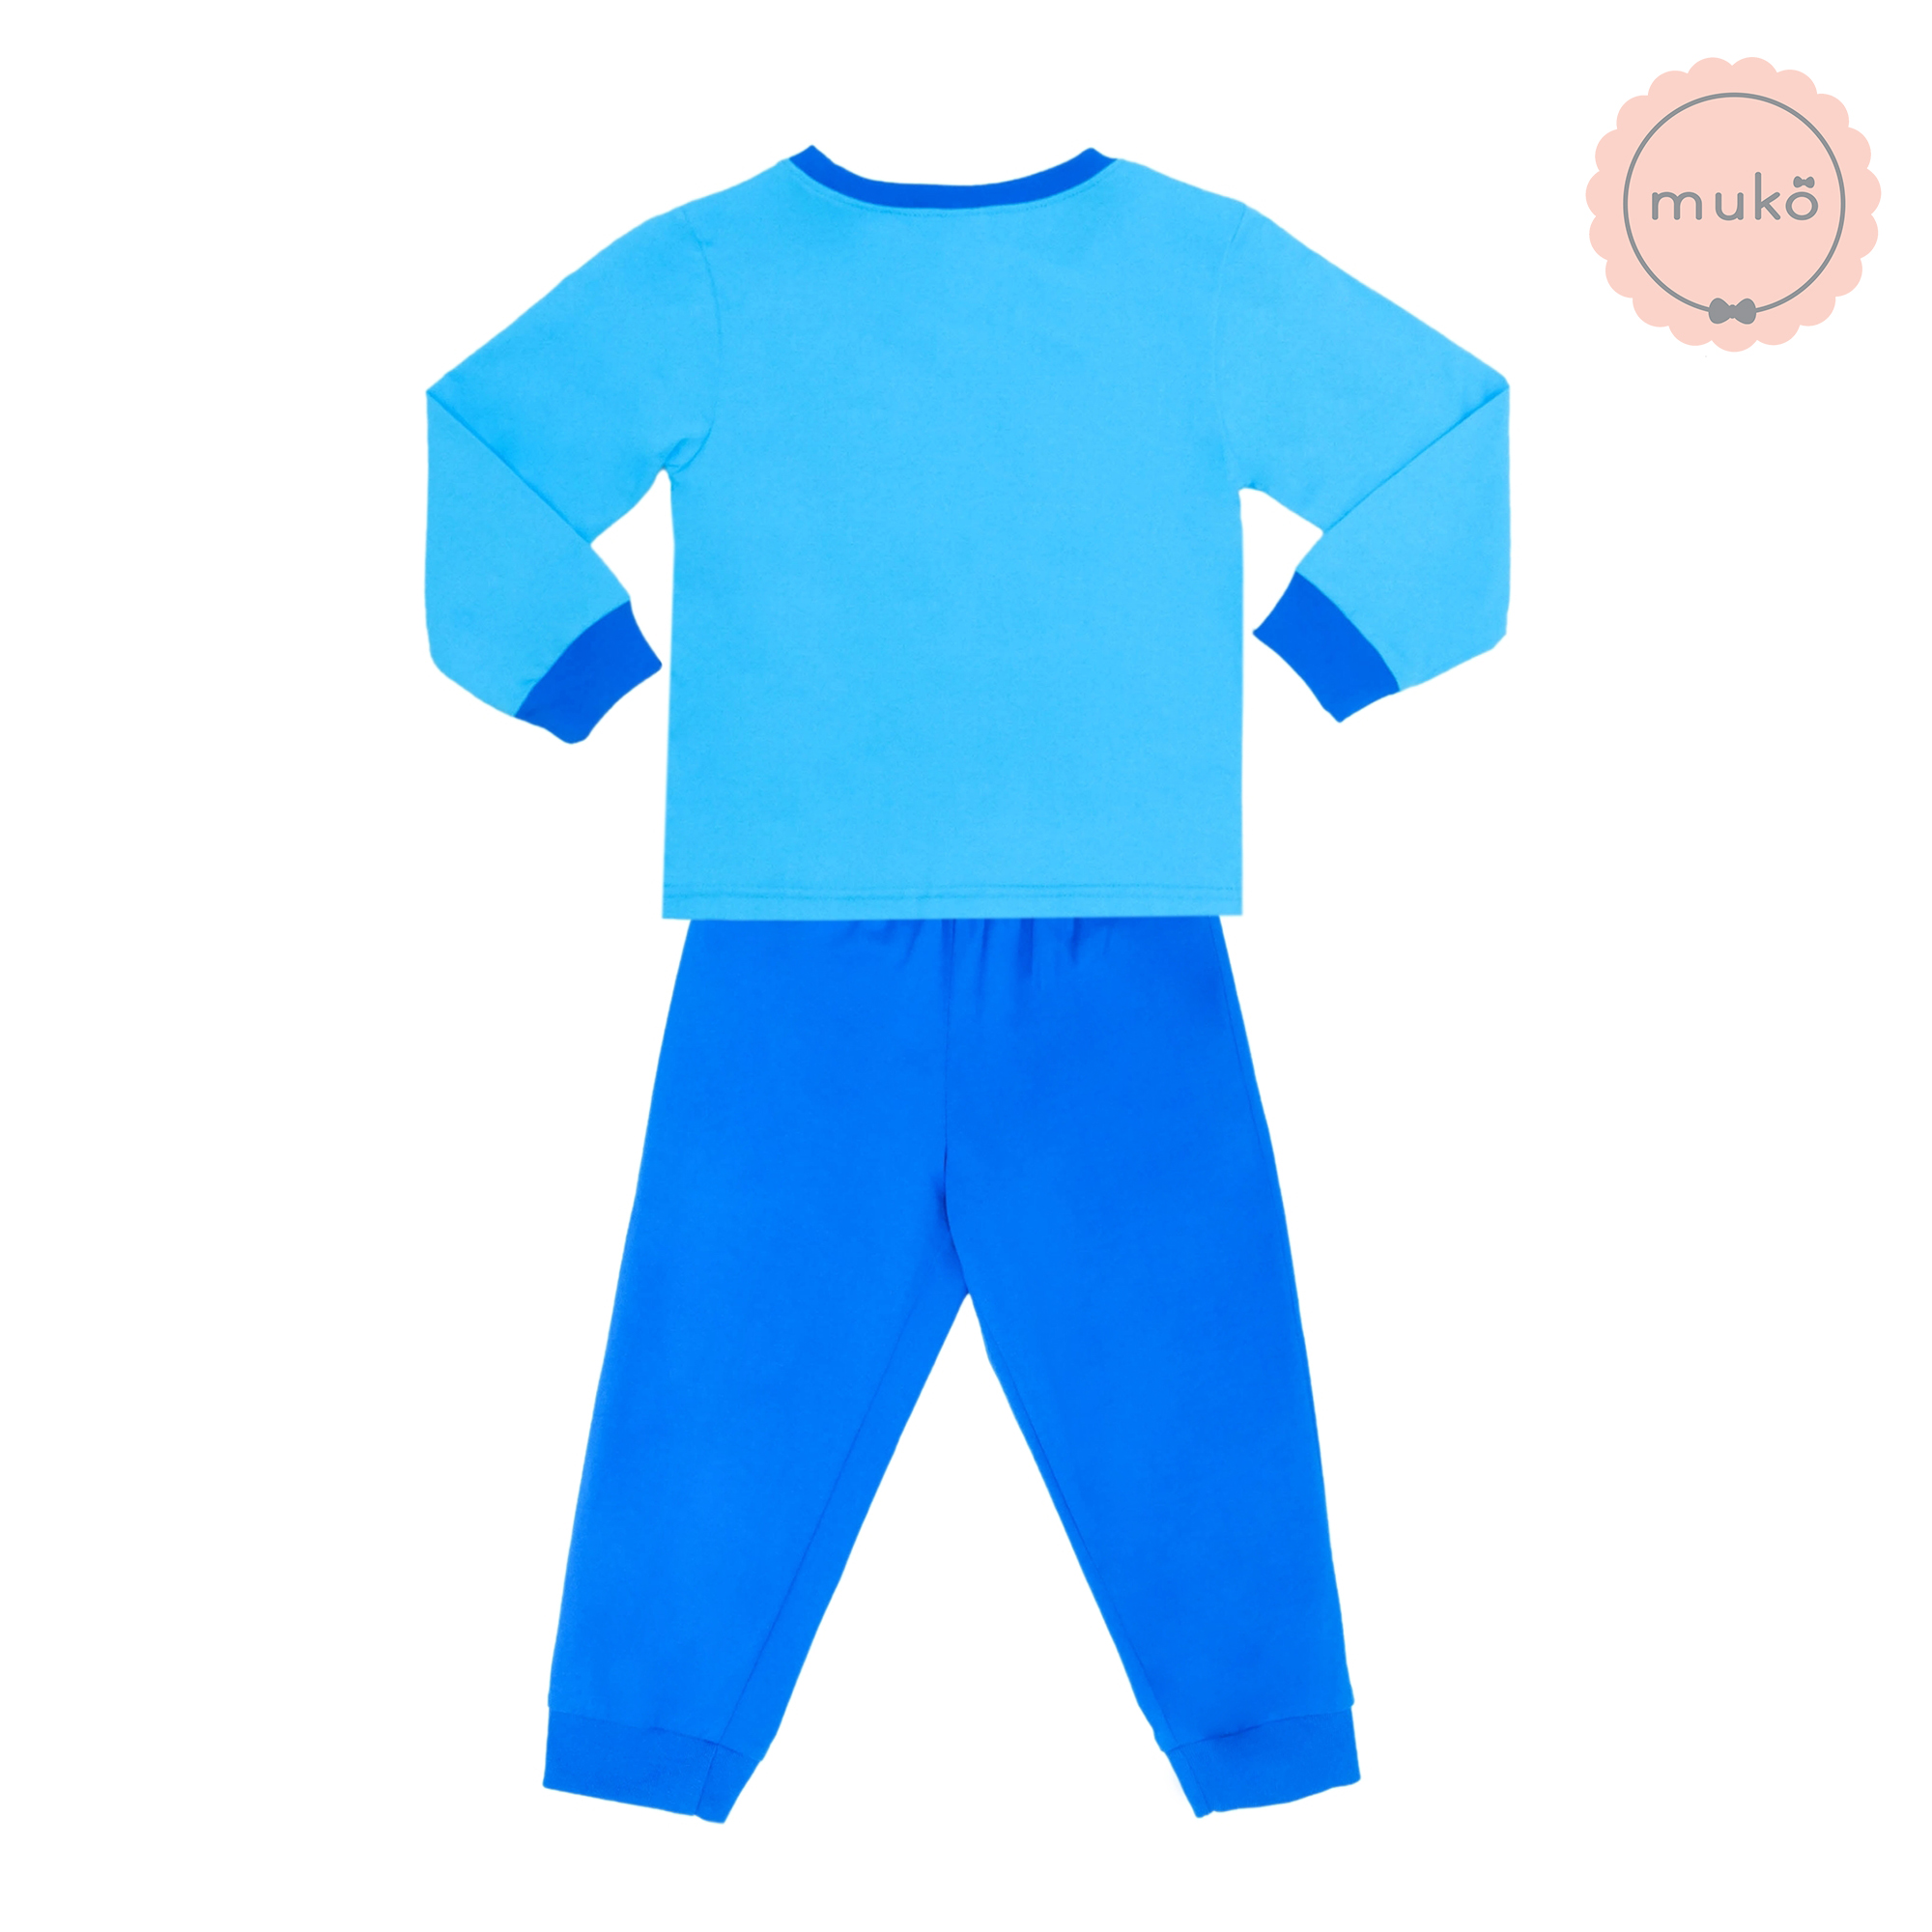 ชุดเด็ก 1-2 ขวบ แขนยาว-ขายาว (Size 2) DMK127-01-3-Blue 2 ลาย มินนี่ Minnie สีฟ้า